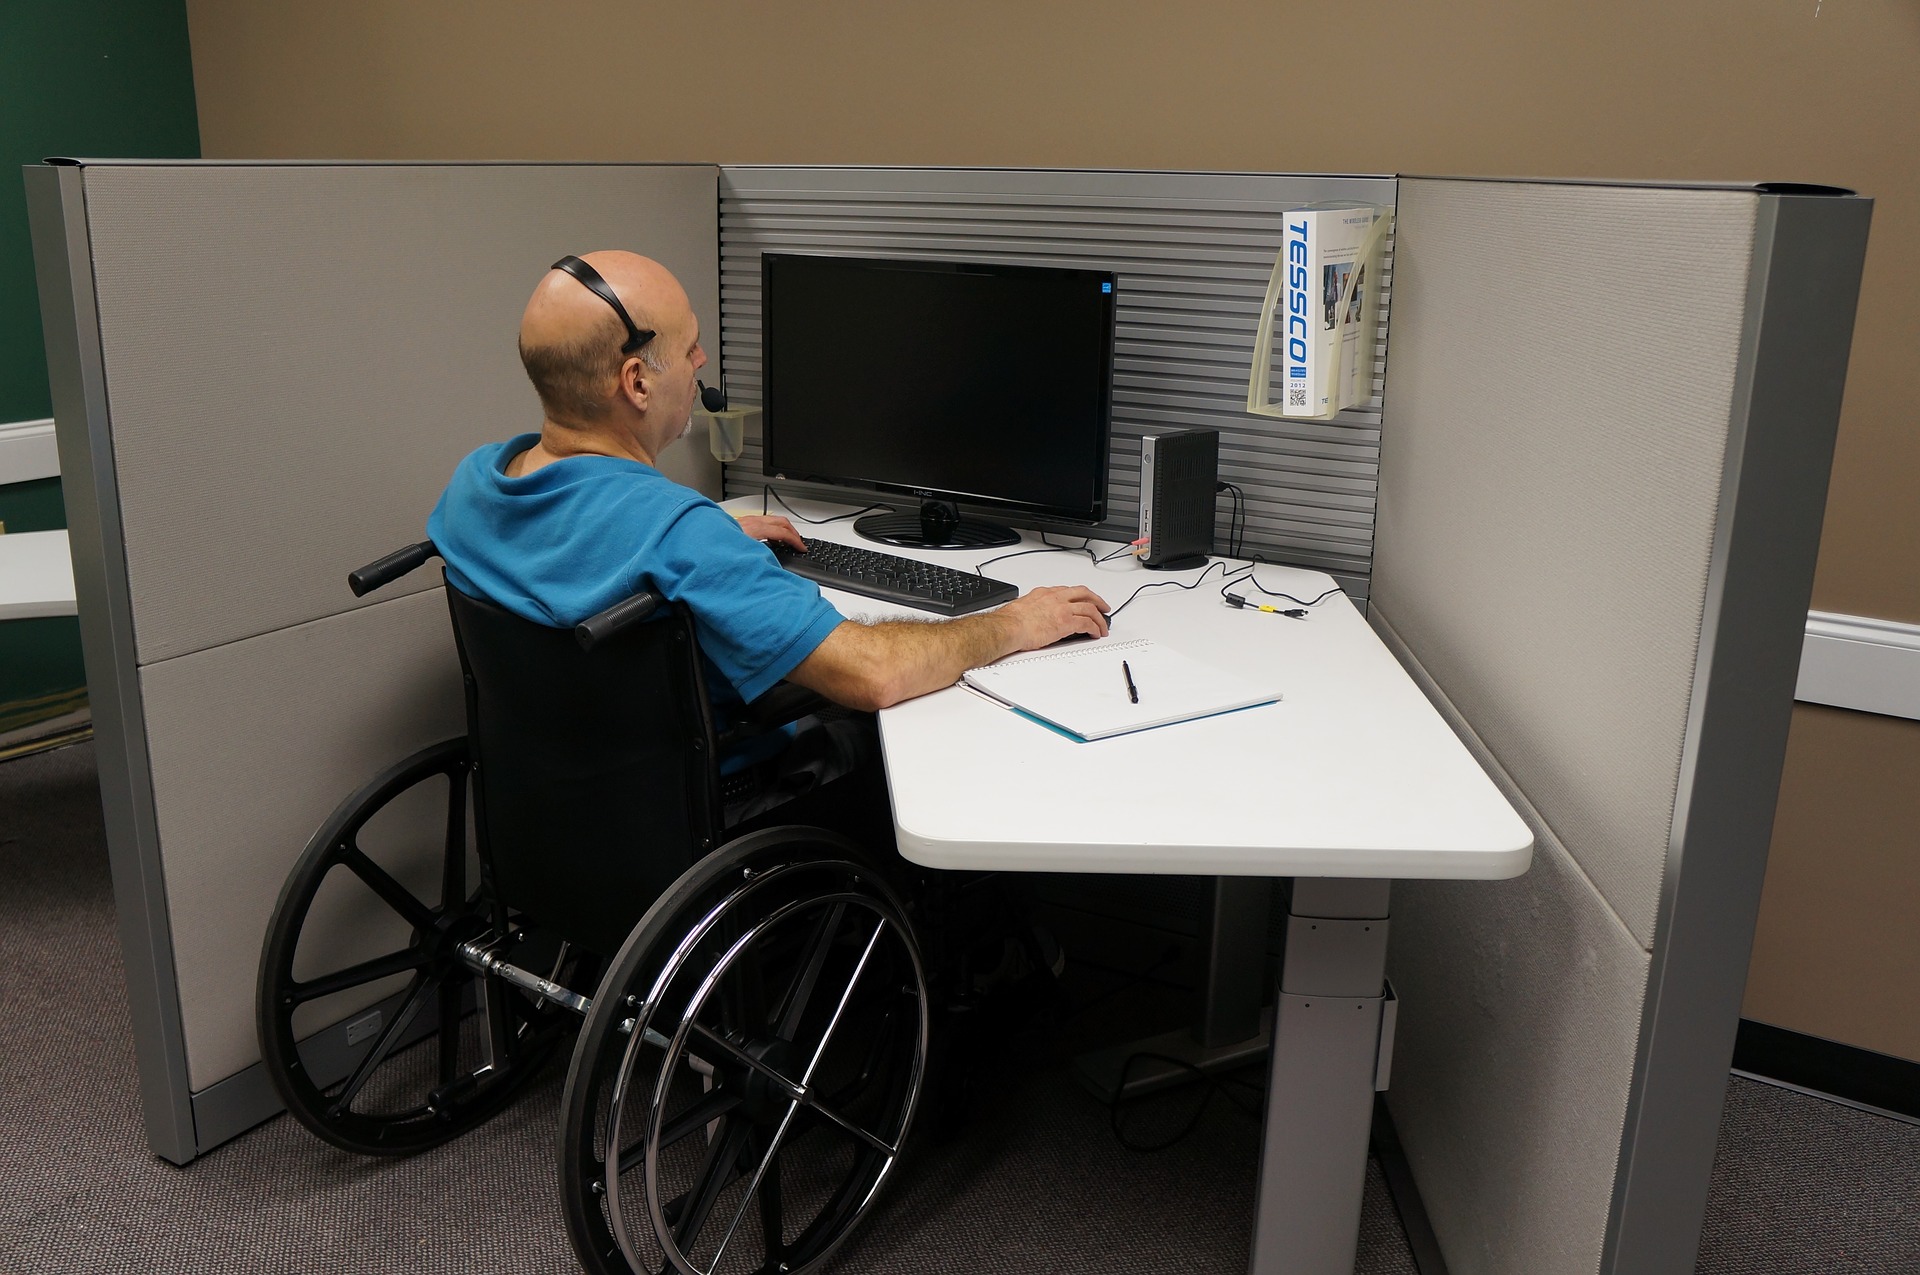 Worker in wheelchair at desk